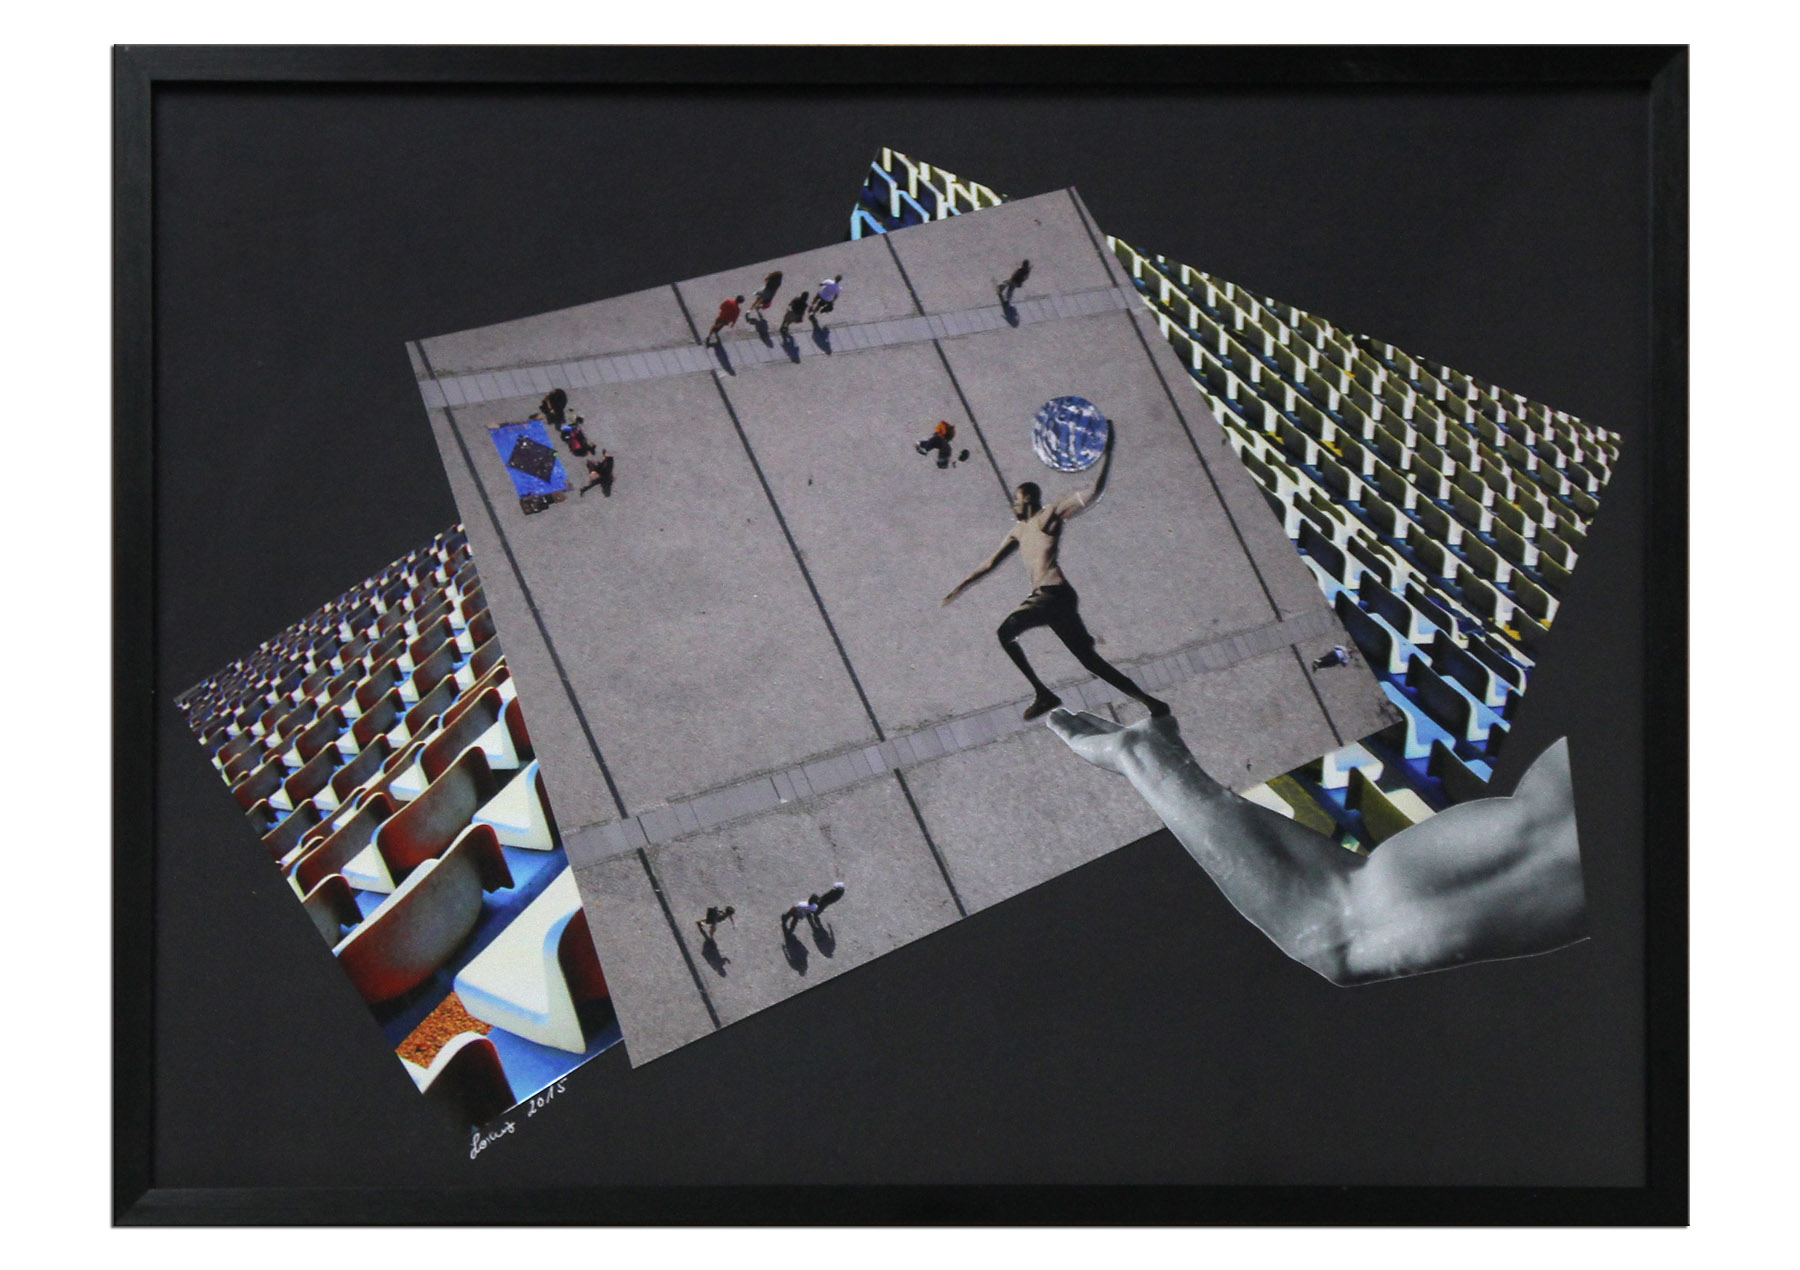 Surrealistische Collage, F. Lorenz: "The Game"